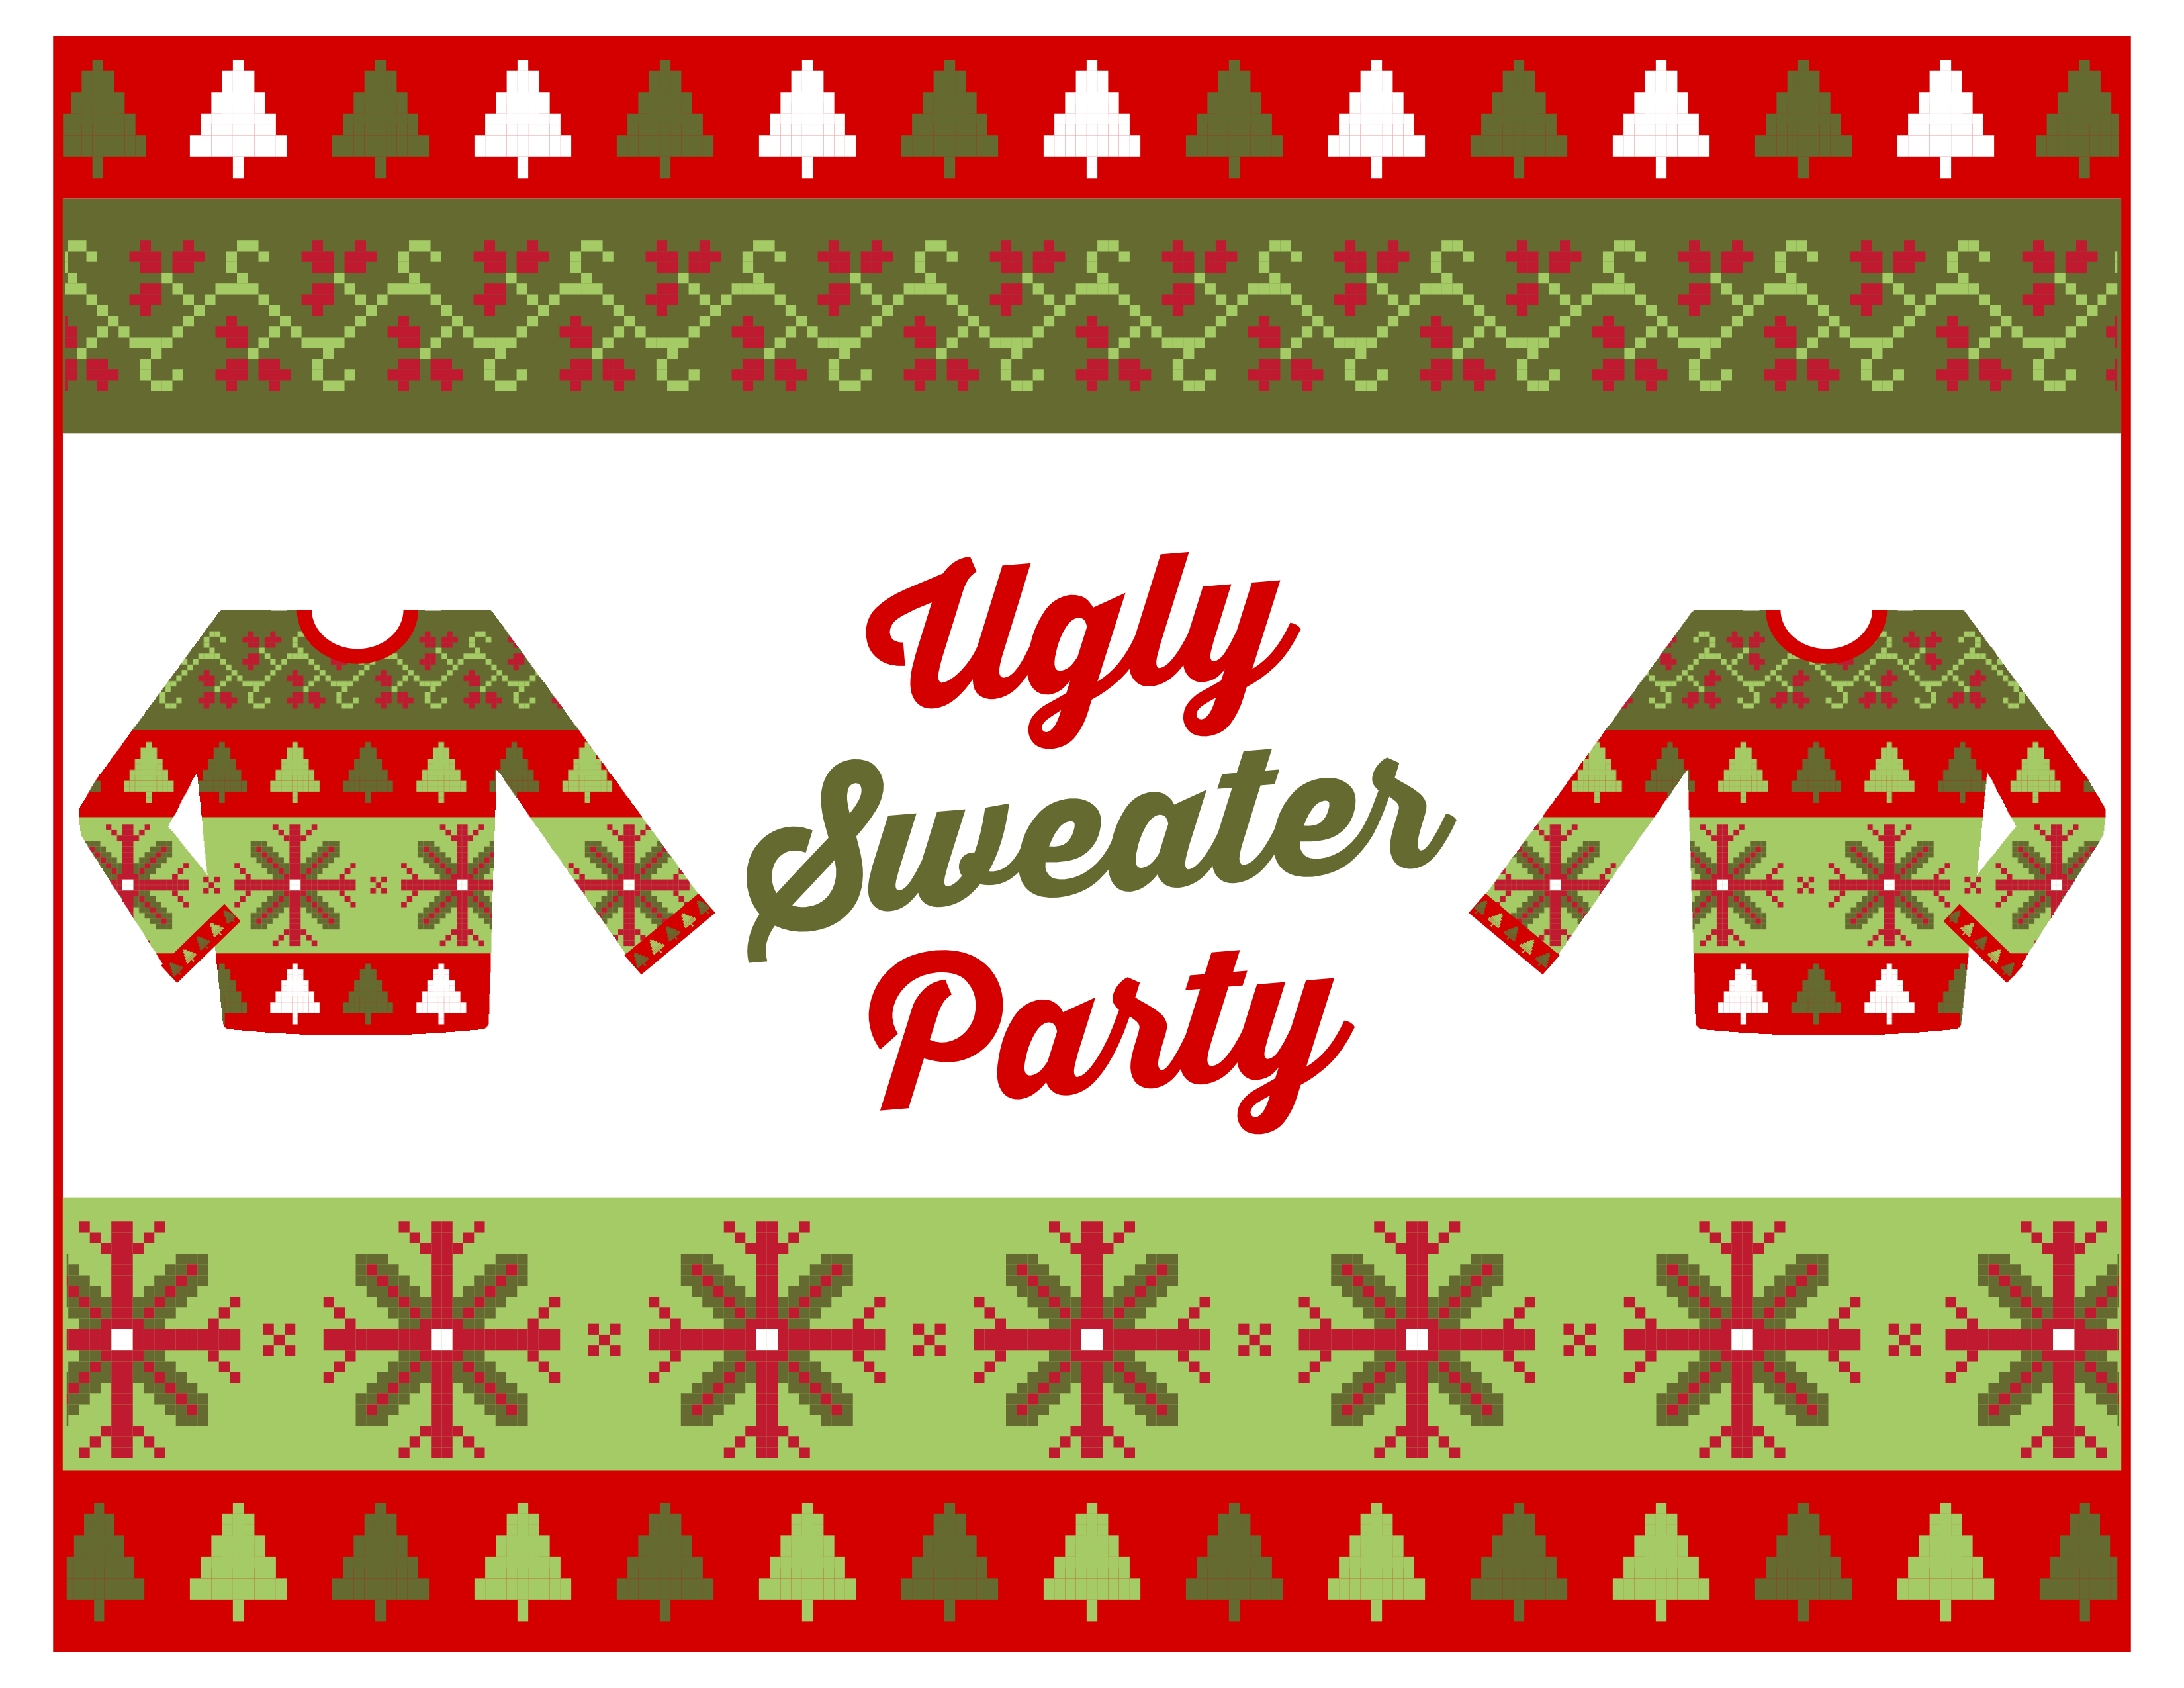 bergen-linen-how-to-host-an-ugly-sweater-party-bergen-linen-has-a-few